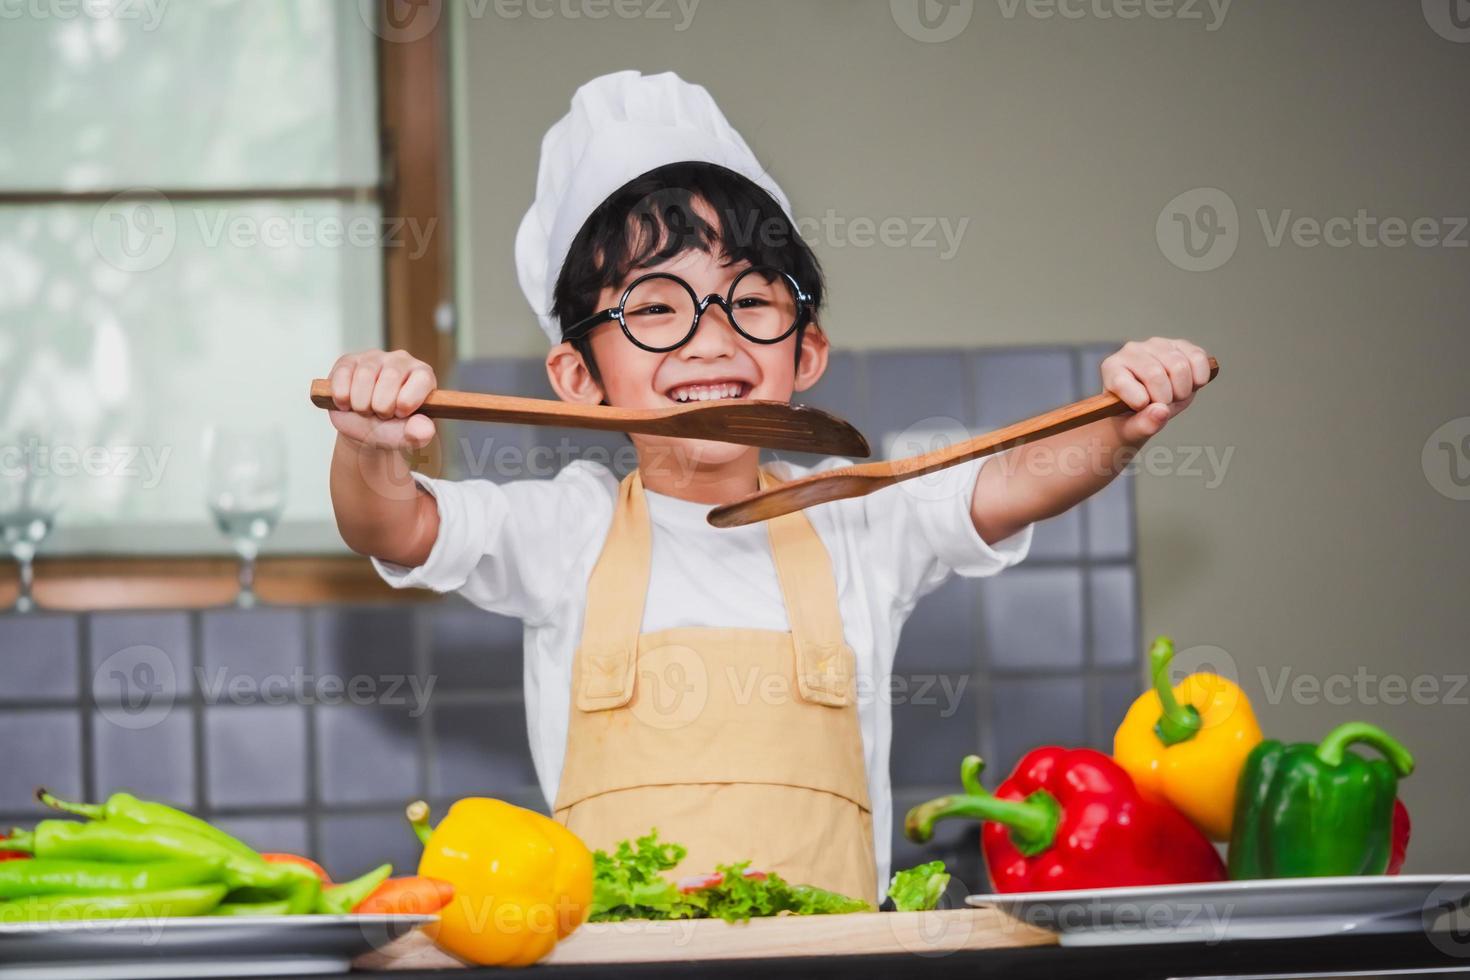 garçon asiatique, fils, cuisine, salade, nourriture, tenir, cuillère bois, à, légume, tenue, tomates, et, carottes, poivrons, sur, assiette photo